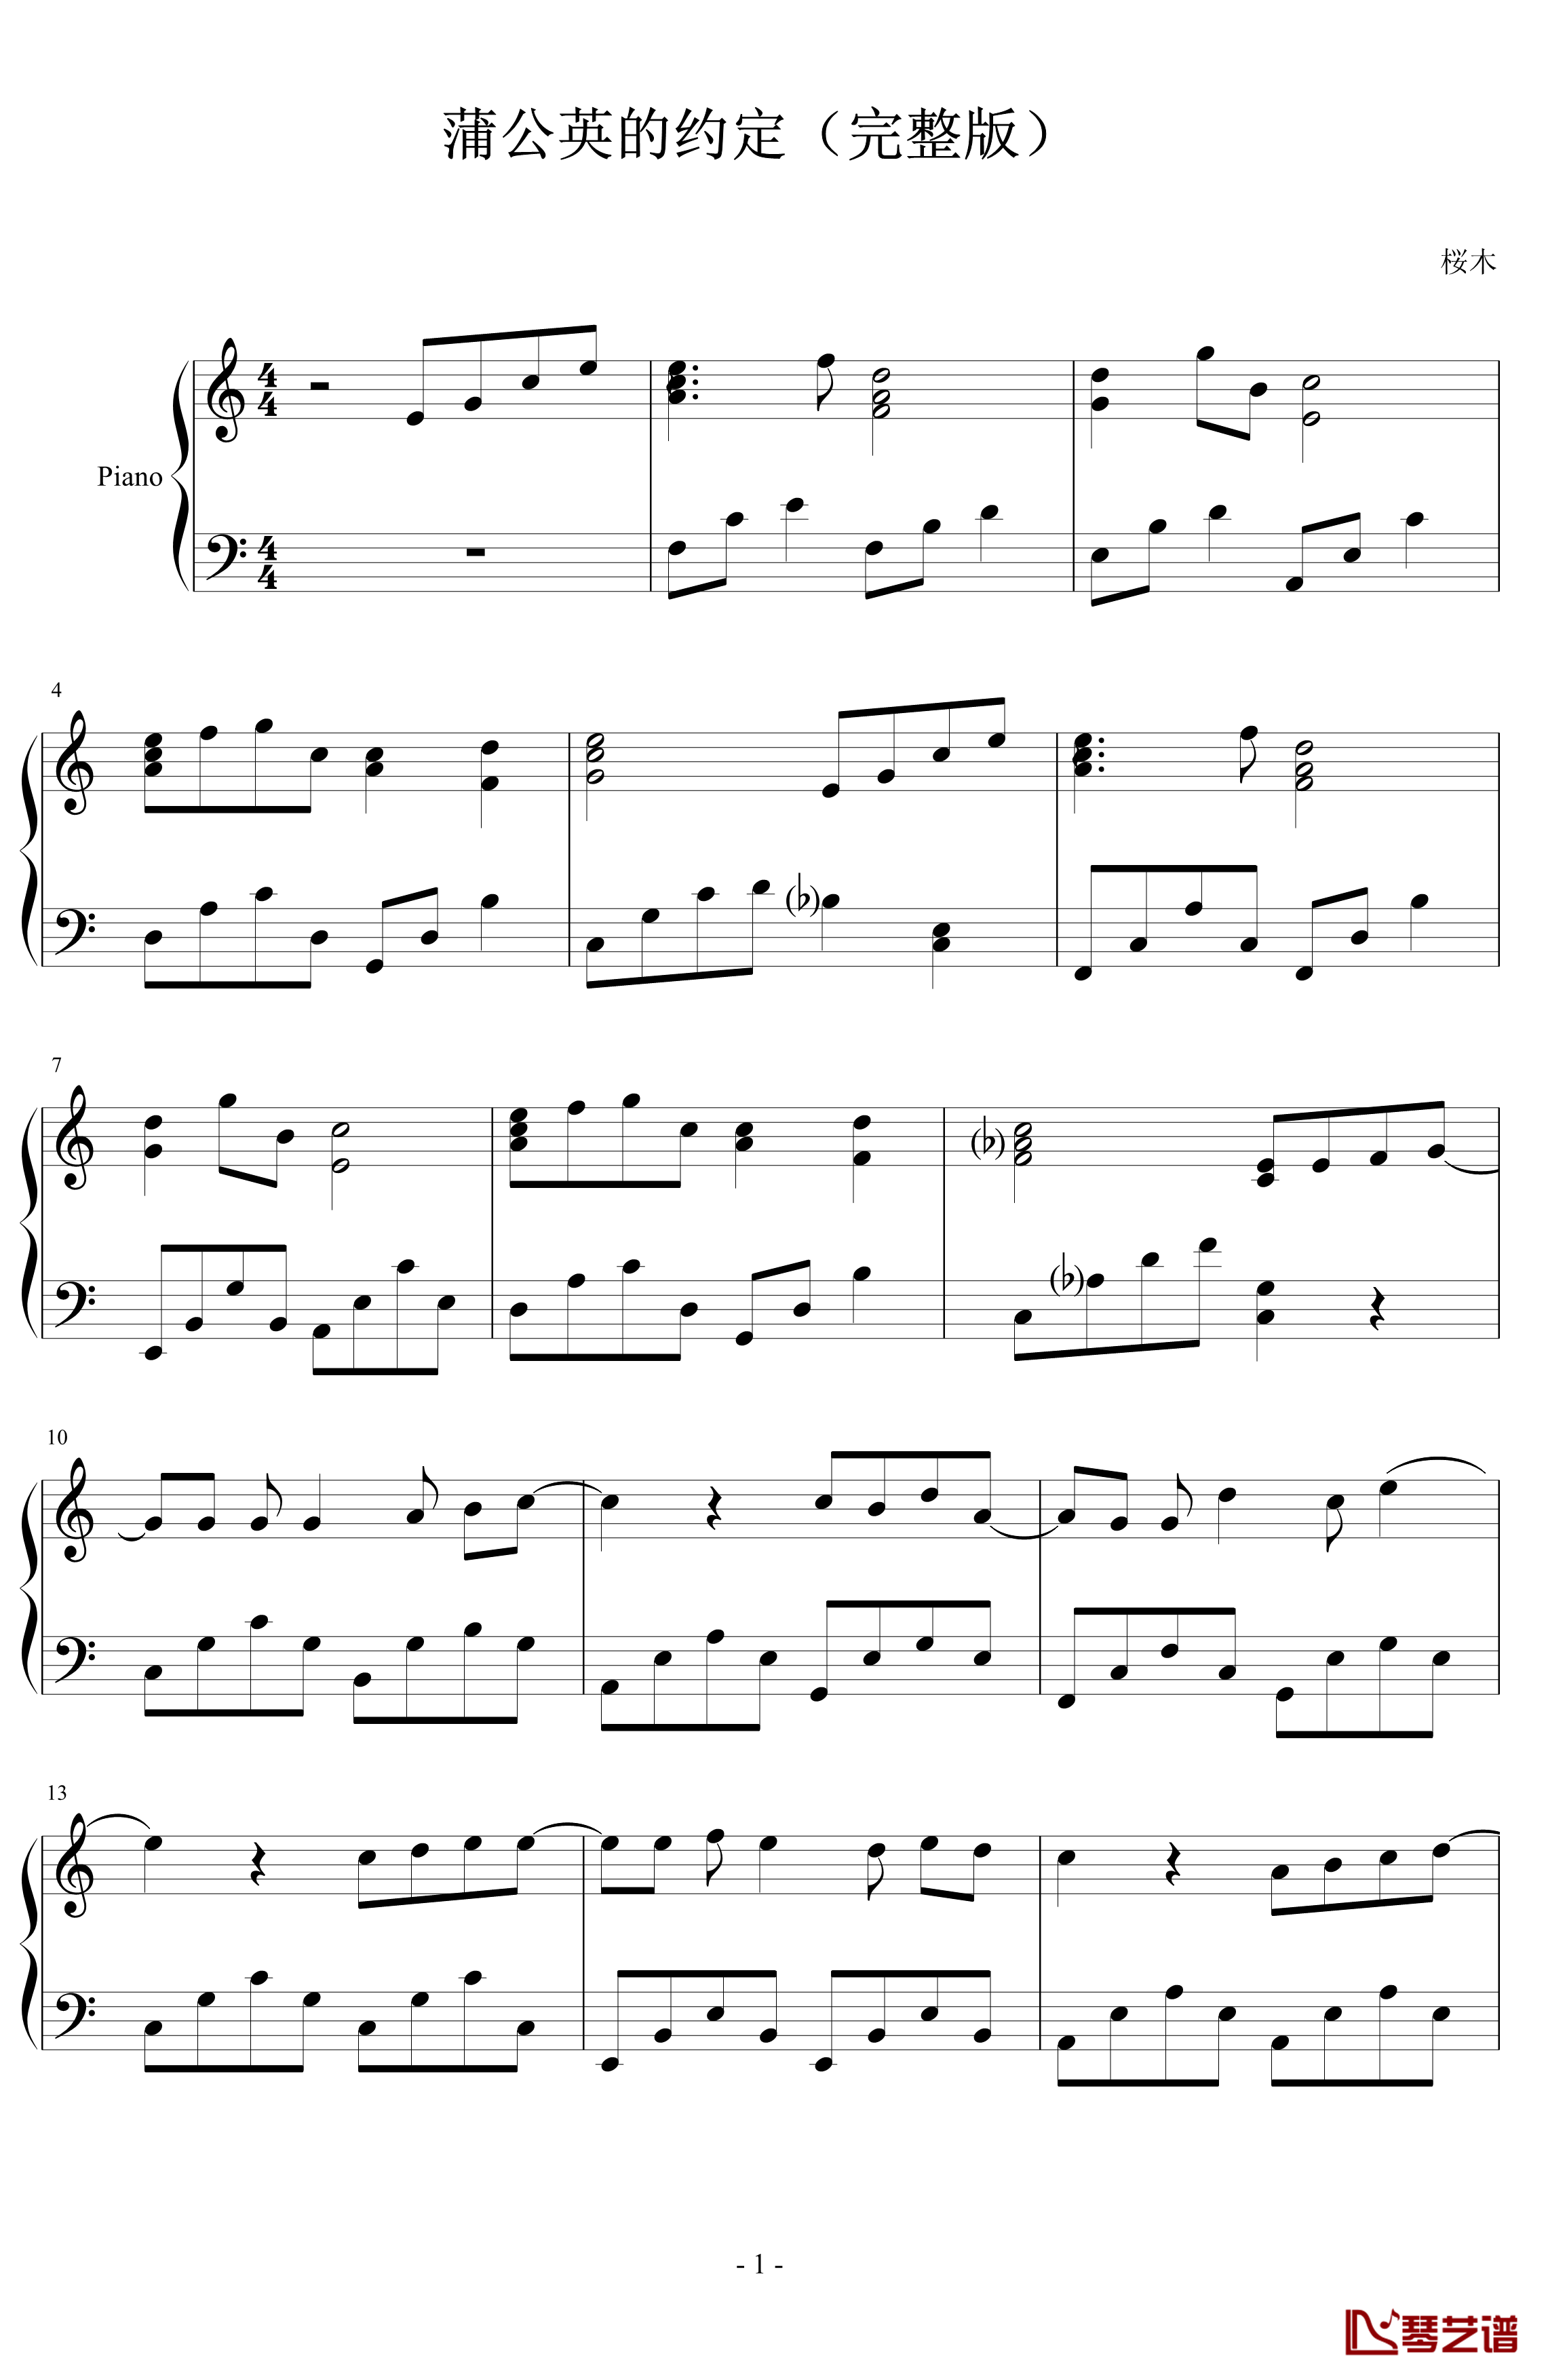 蒲公英的约定钢琴谱-完整版-周杰伦1